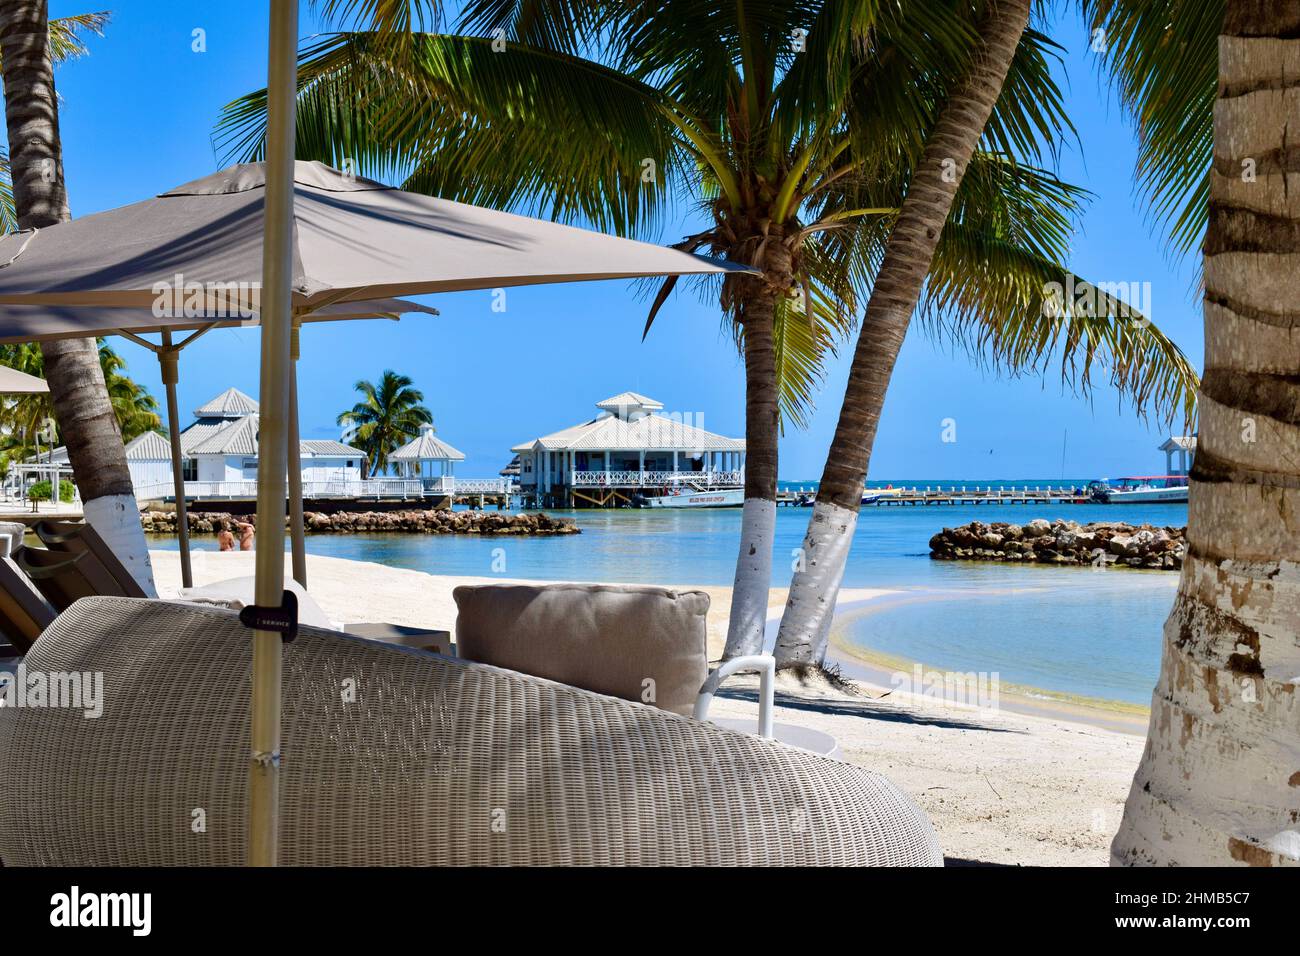 Une journée idyllique dans une station balnéaire sur la côte est de San Pedro, Belize avec un coin salon, palmiers, jetée, et 2 touristes dans l'eau. Banque D'Images